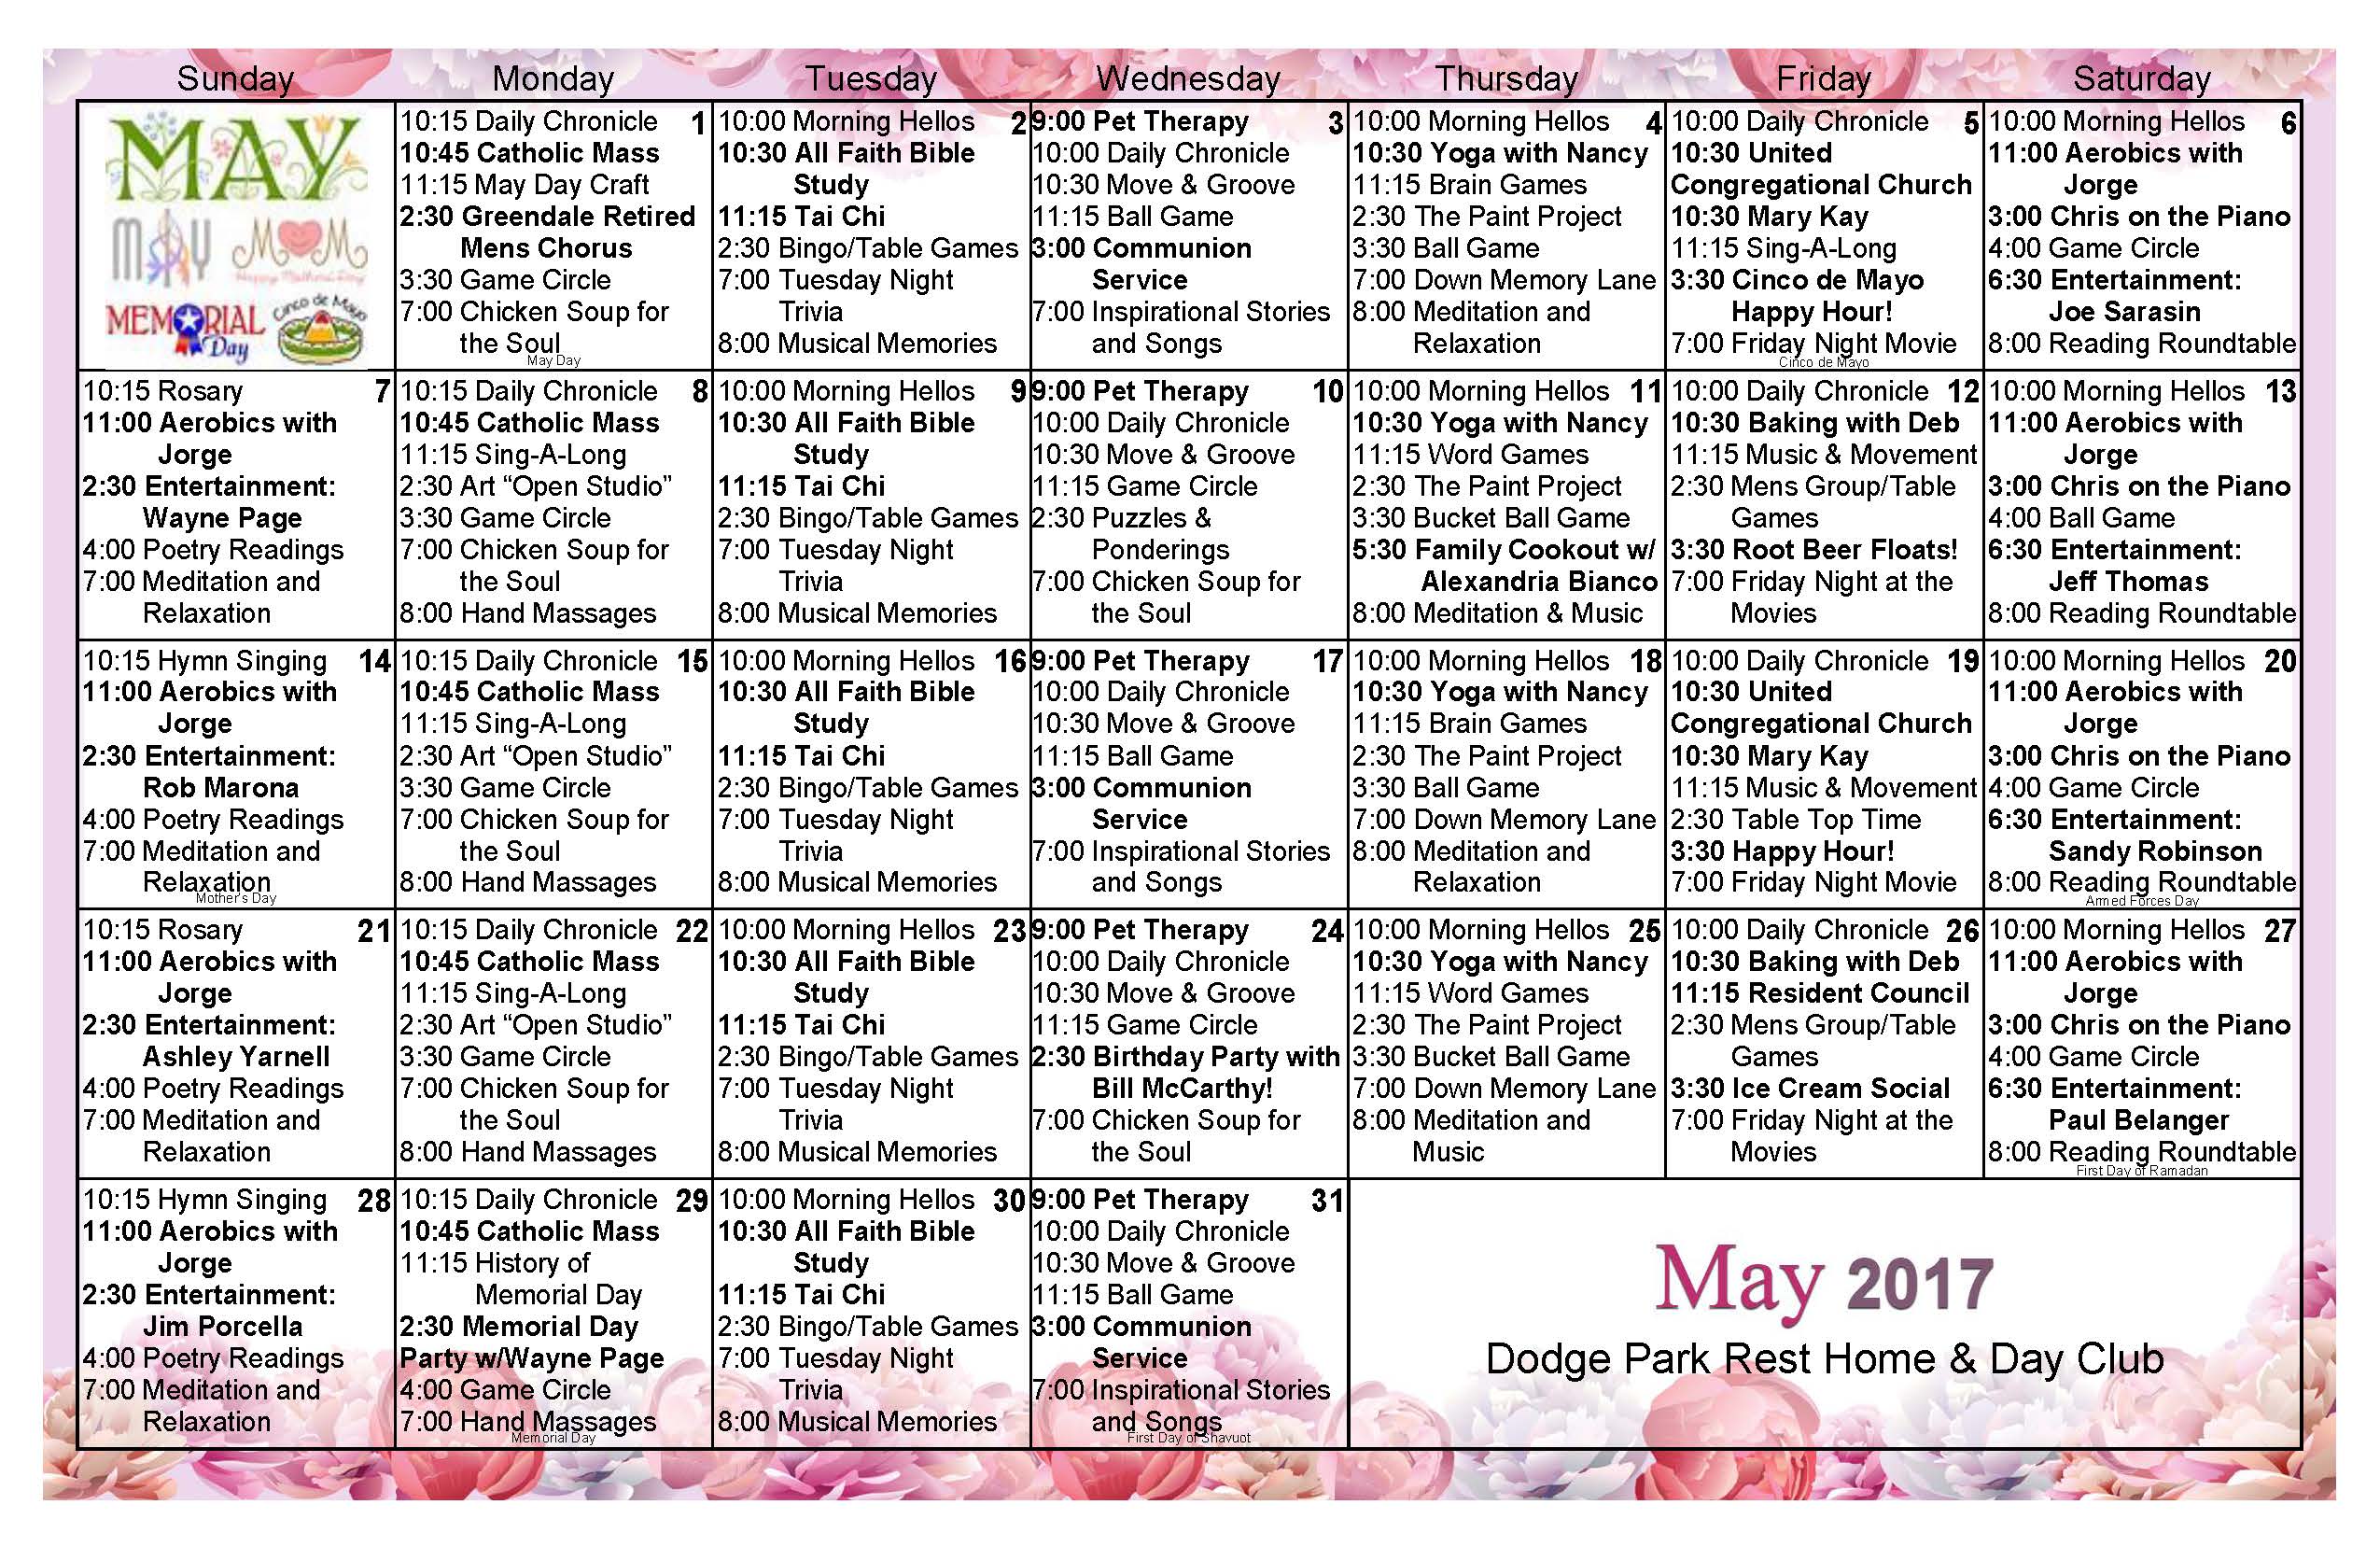 Download Activity calendar for Dodge Park Rest Home